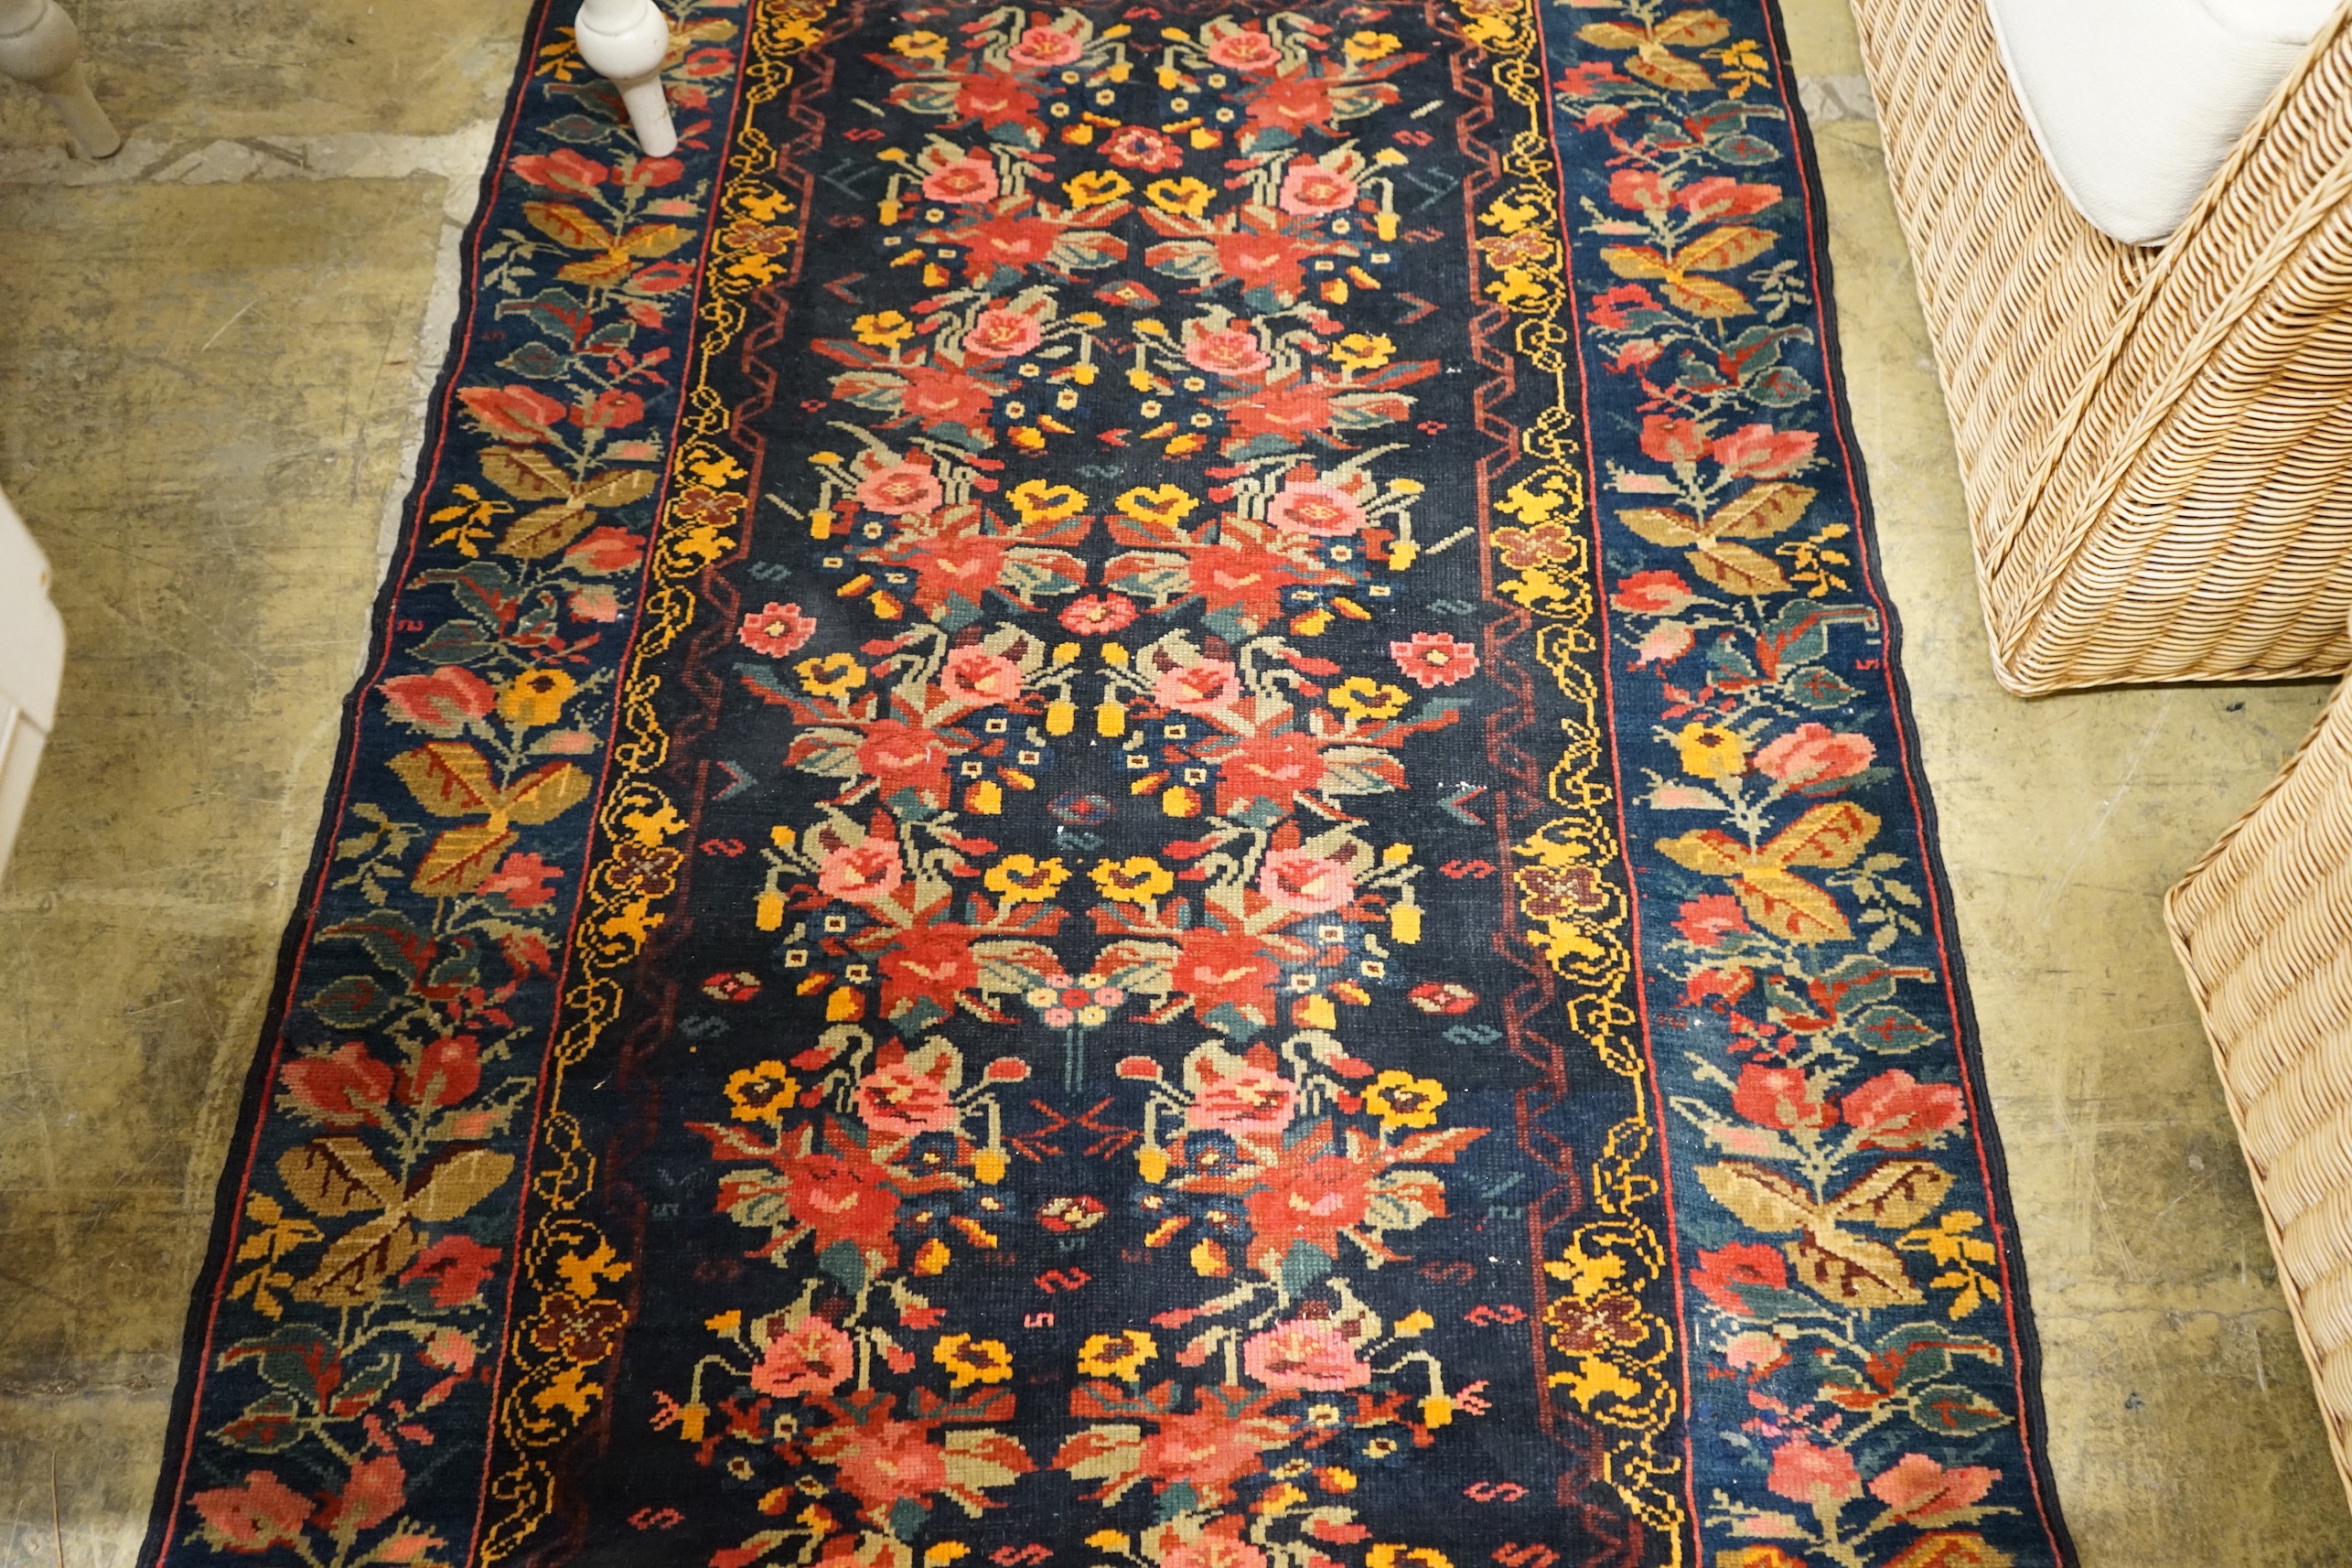 A Kirman style blue ground floral rug, 160 x 105cm